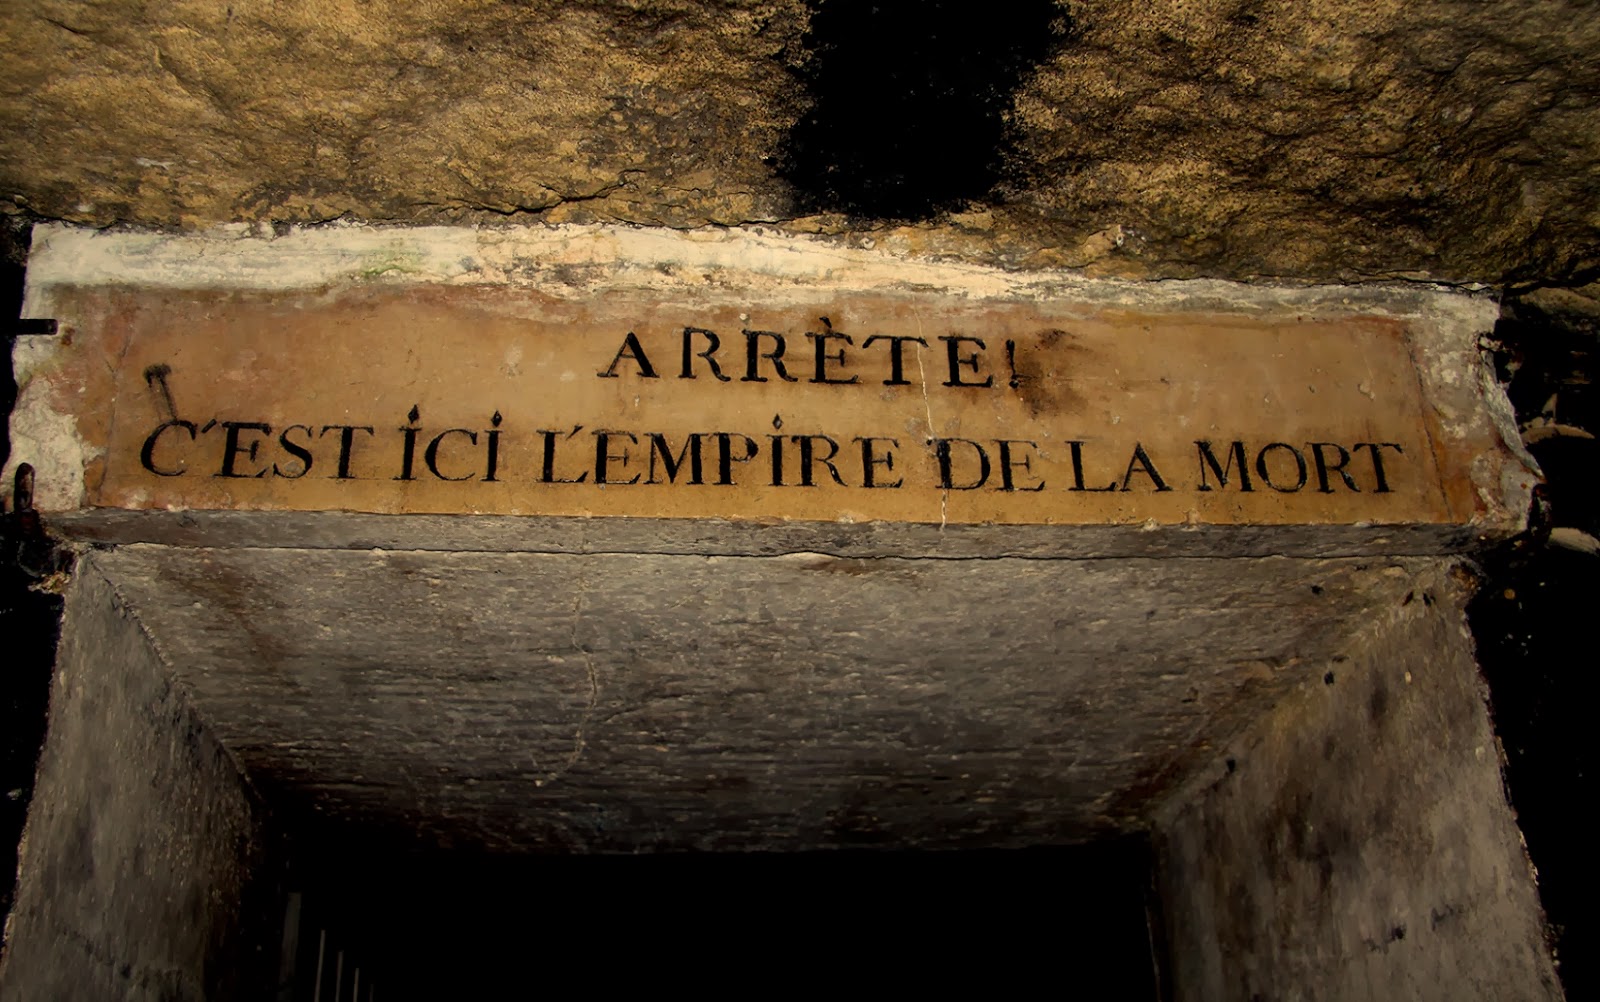 Catacumbas de Paris: Conheça o abrigo de milhões de mortos em túneis subterrâneos